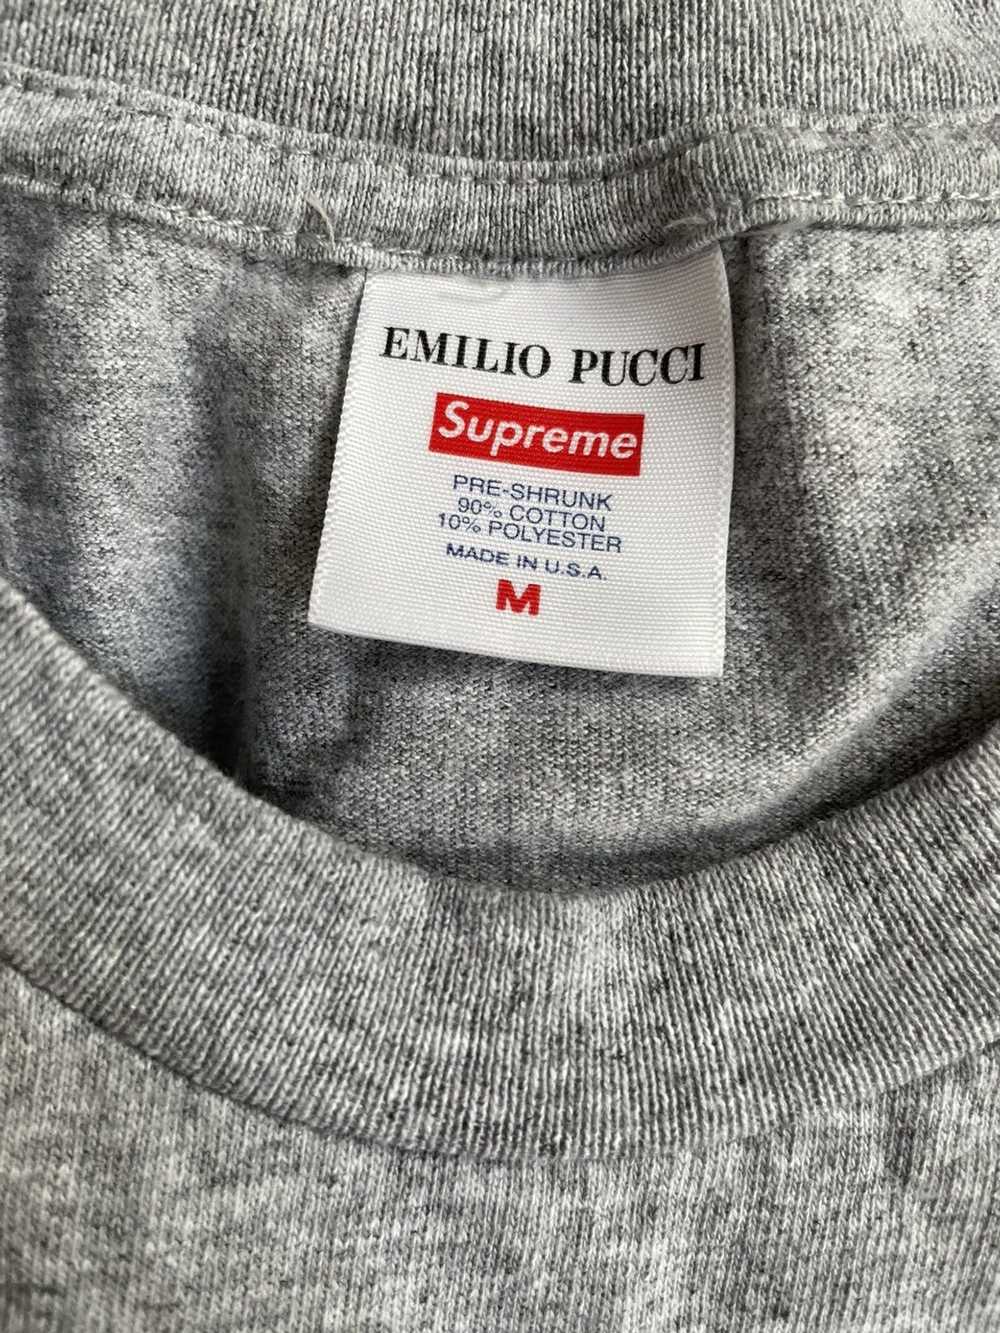 Emilio Pucci × Supreme Supreme Emilio Pucci Box l… - image 2